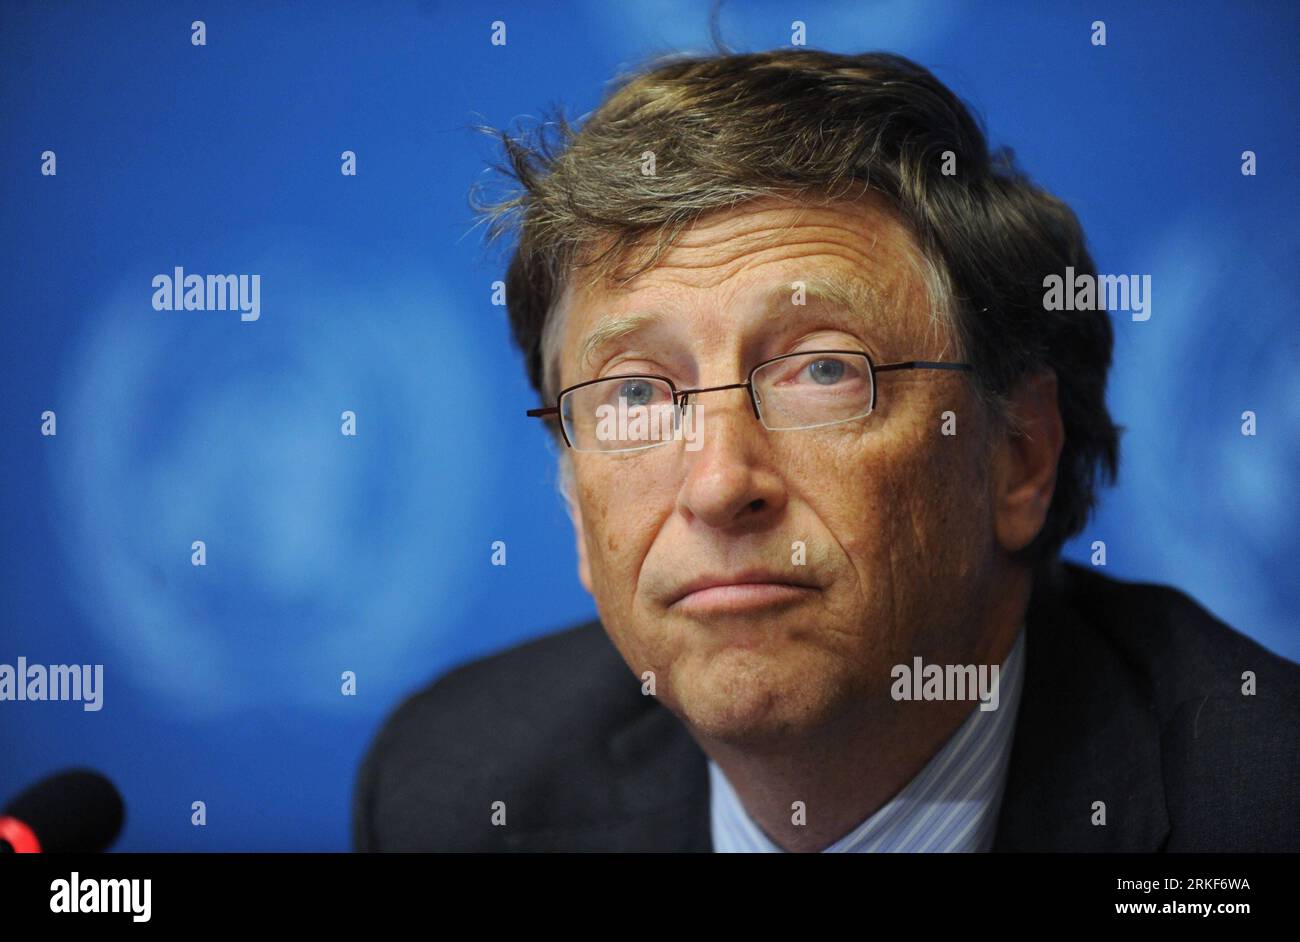 (110517) -- GINEVRA, 17 maggio 2011 (Xinhua) -- Bill Gates, co-presidente della Fondazione Bill&Melinda Gates, interviene in una conferenza stampa a seguito del discorso di apertura durante il 64° assemlby mondiale della sanità a Ginevra, in Svizzera, il 17 maggio 2011. Bill Gates ha sfidato i ministri della salute e i leader mondiali della salute a rendere i vaccini la loro priorità assoluta per salvare milioni di vite. (Xinhua/Yu Yang)(zcc) SVIZZERA-GINEVRA-WHA-BILL GATES PUBLICATIONxNOTxINxCHN Ginevra 17 maggio 2011 XINHUA Bill Gates il co-presidente della Fondazione Gates parla A una conferenza stampa a seguito del discorso di apertura durante il T Foto Stock